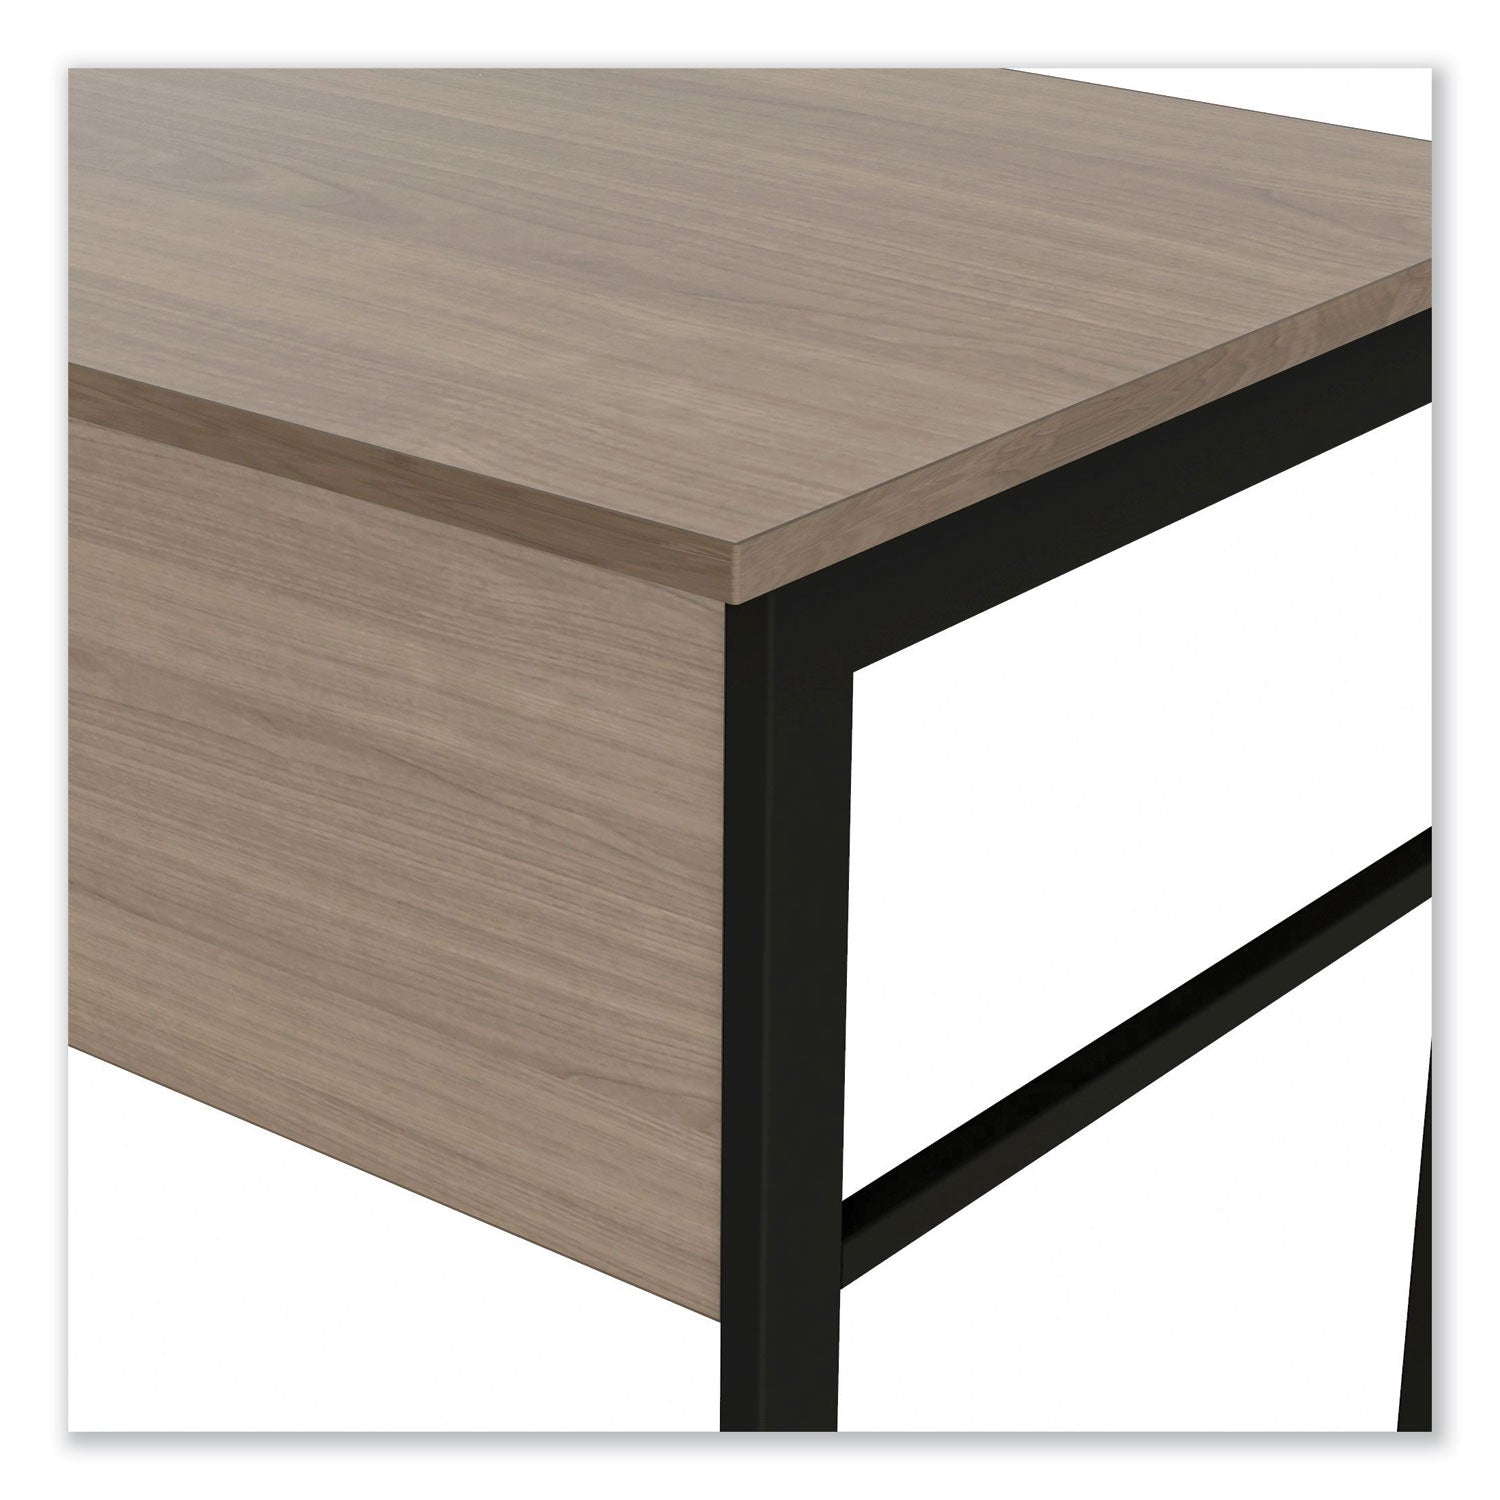 urban-series-l-shaped-desk-59-x-59-x-295-natural-walnut_litur602nw - 2